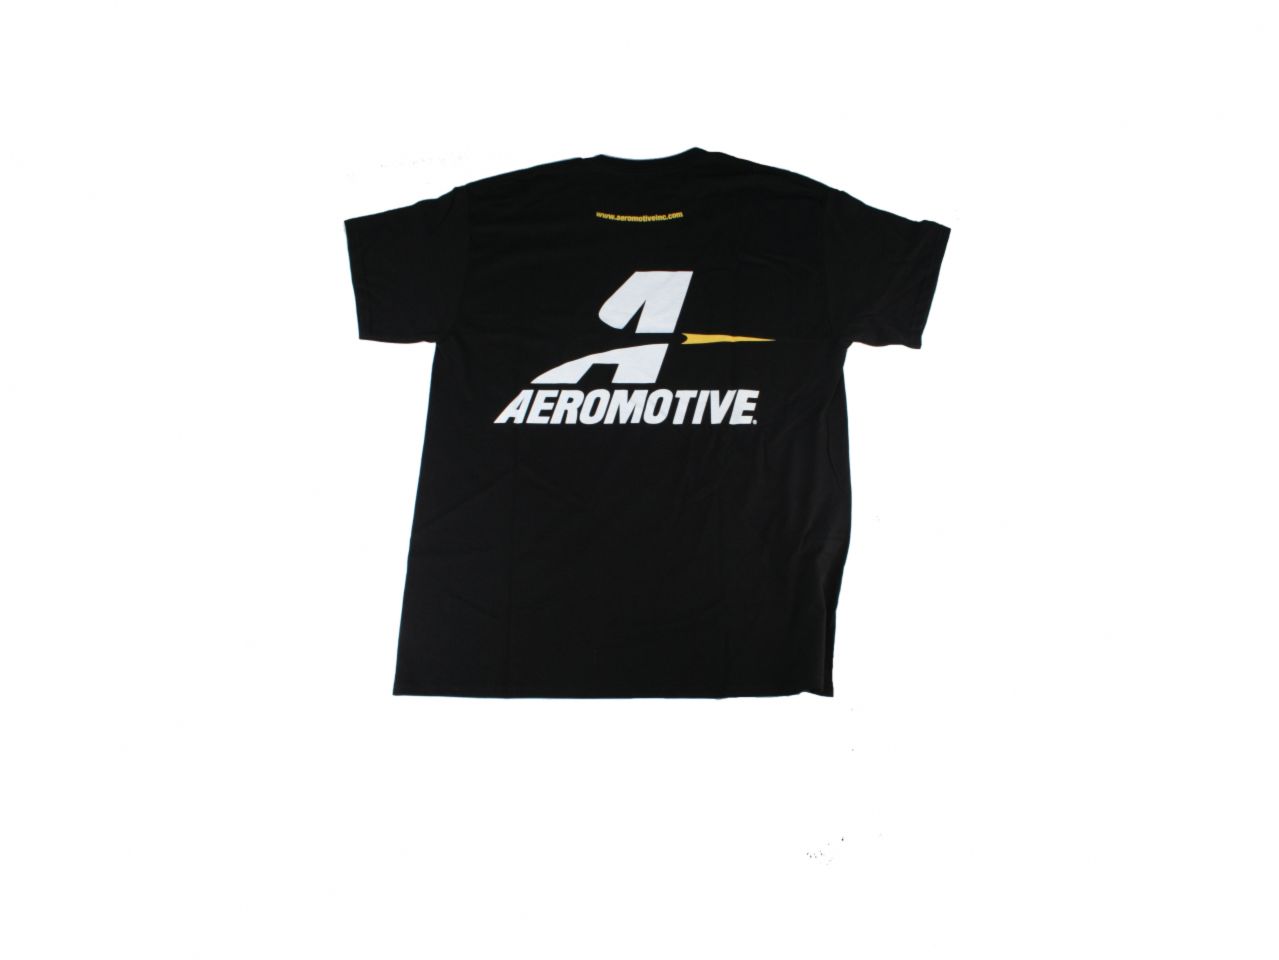 Aeromotive Shirts 91014 Item Image